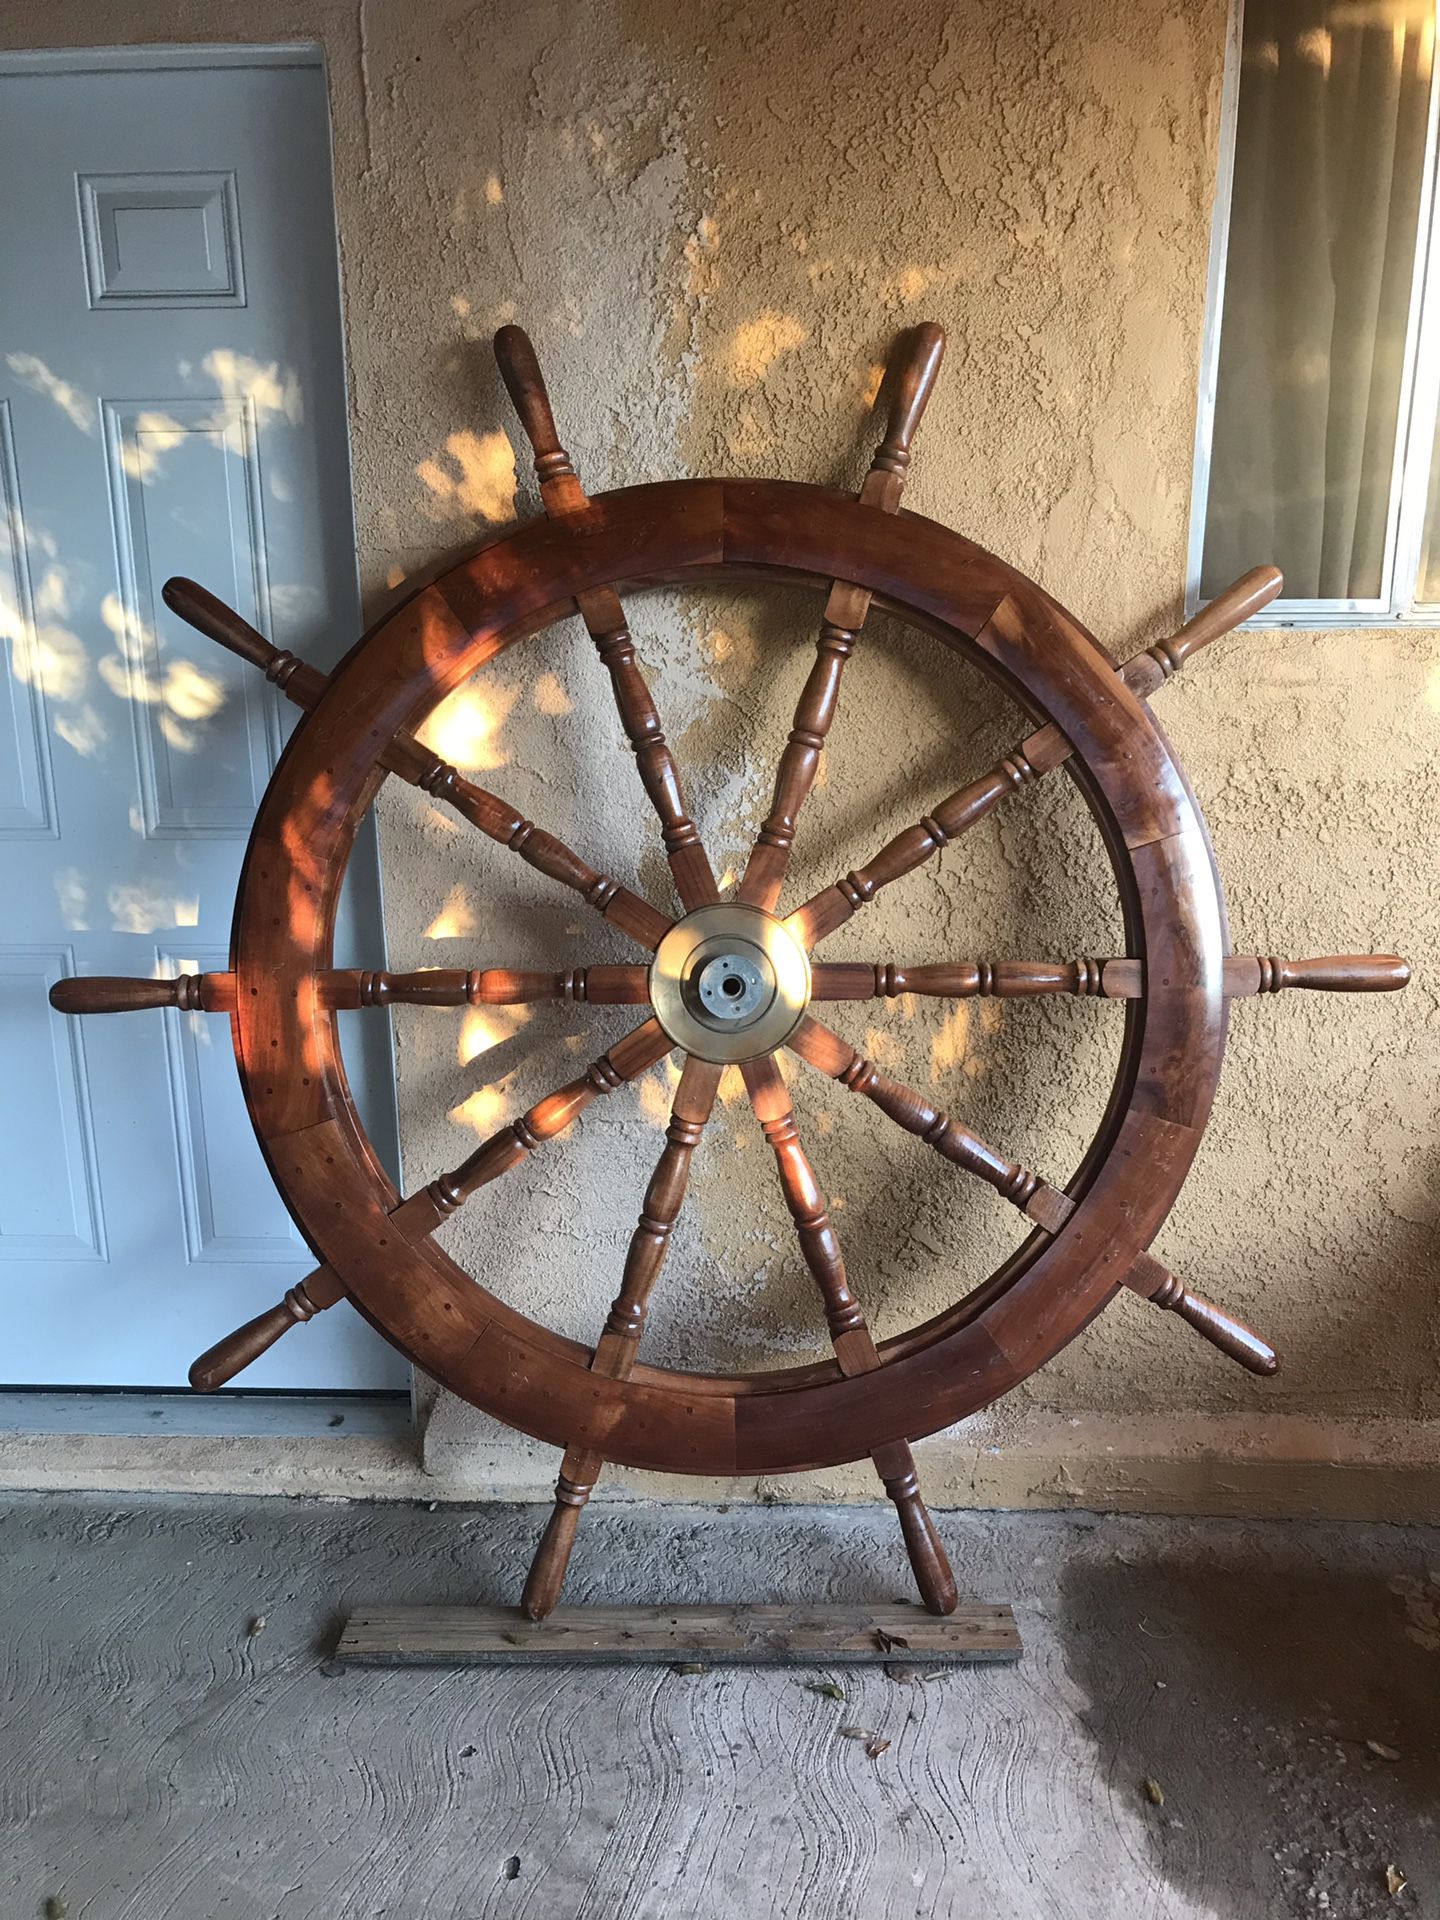 52 inch Yacht Steering Wheel Diameter